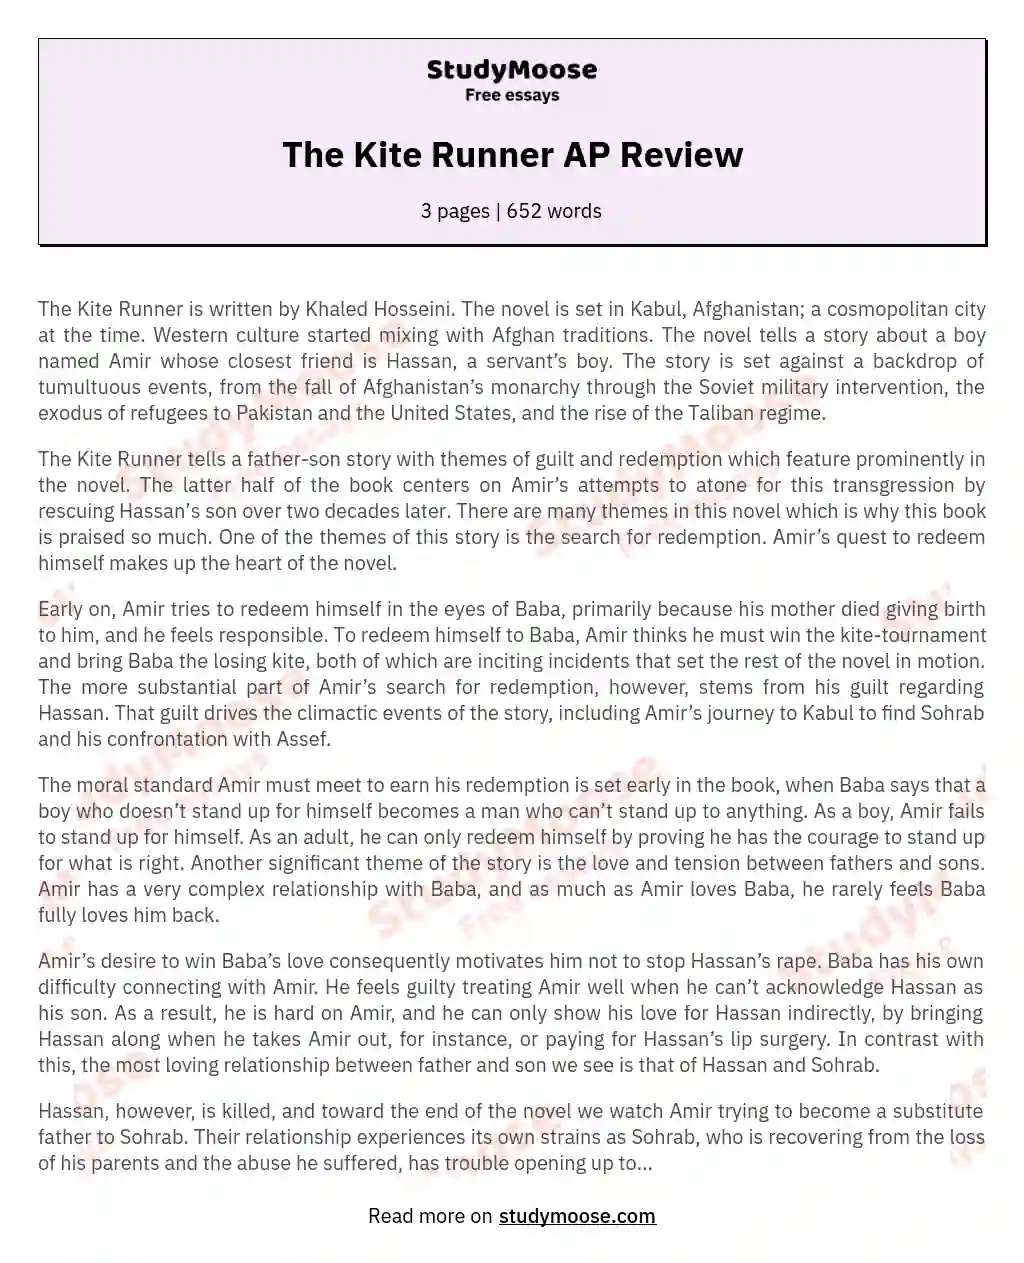 The Kite Runner AP Review